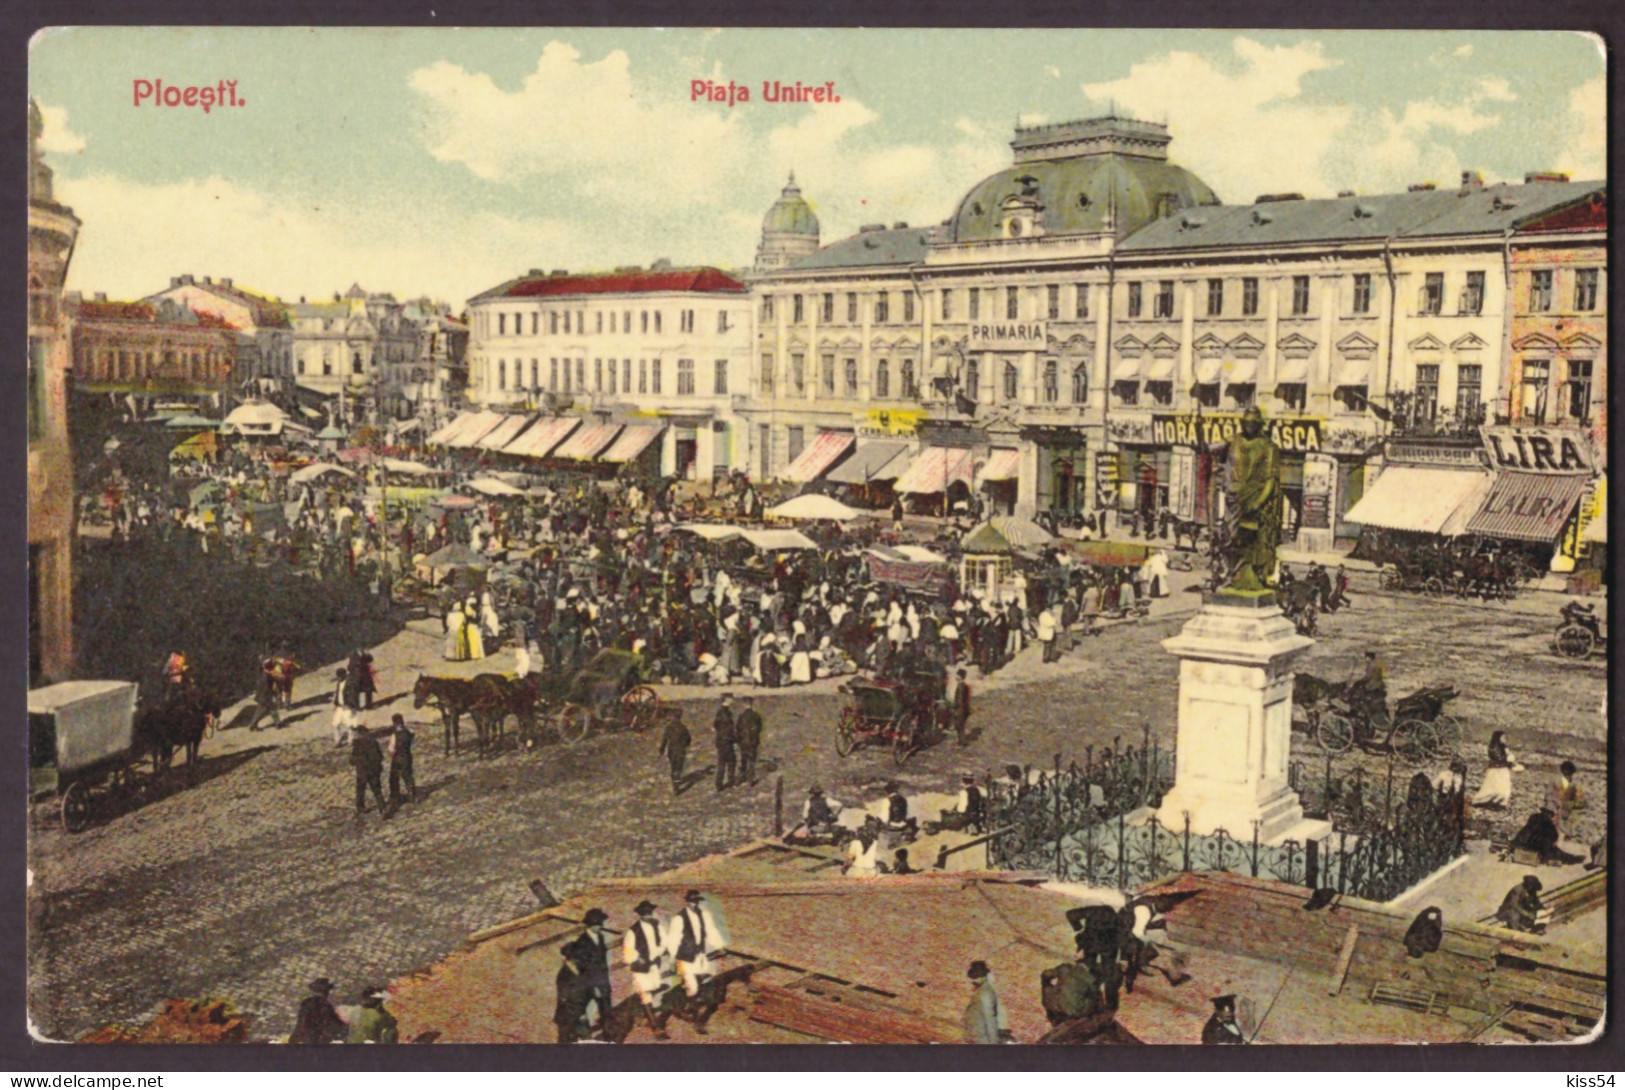 RO 94 - 22911 PLOIESTI, Market, Romania - Old Postcard - Used - 1911 - Roemenië